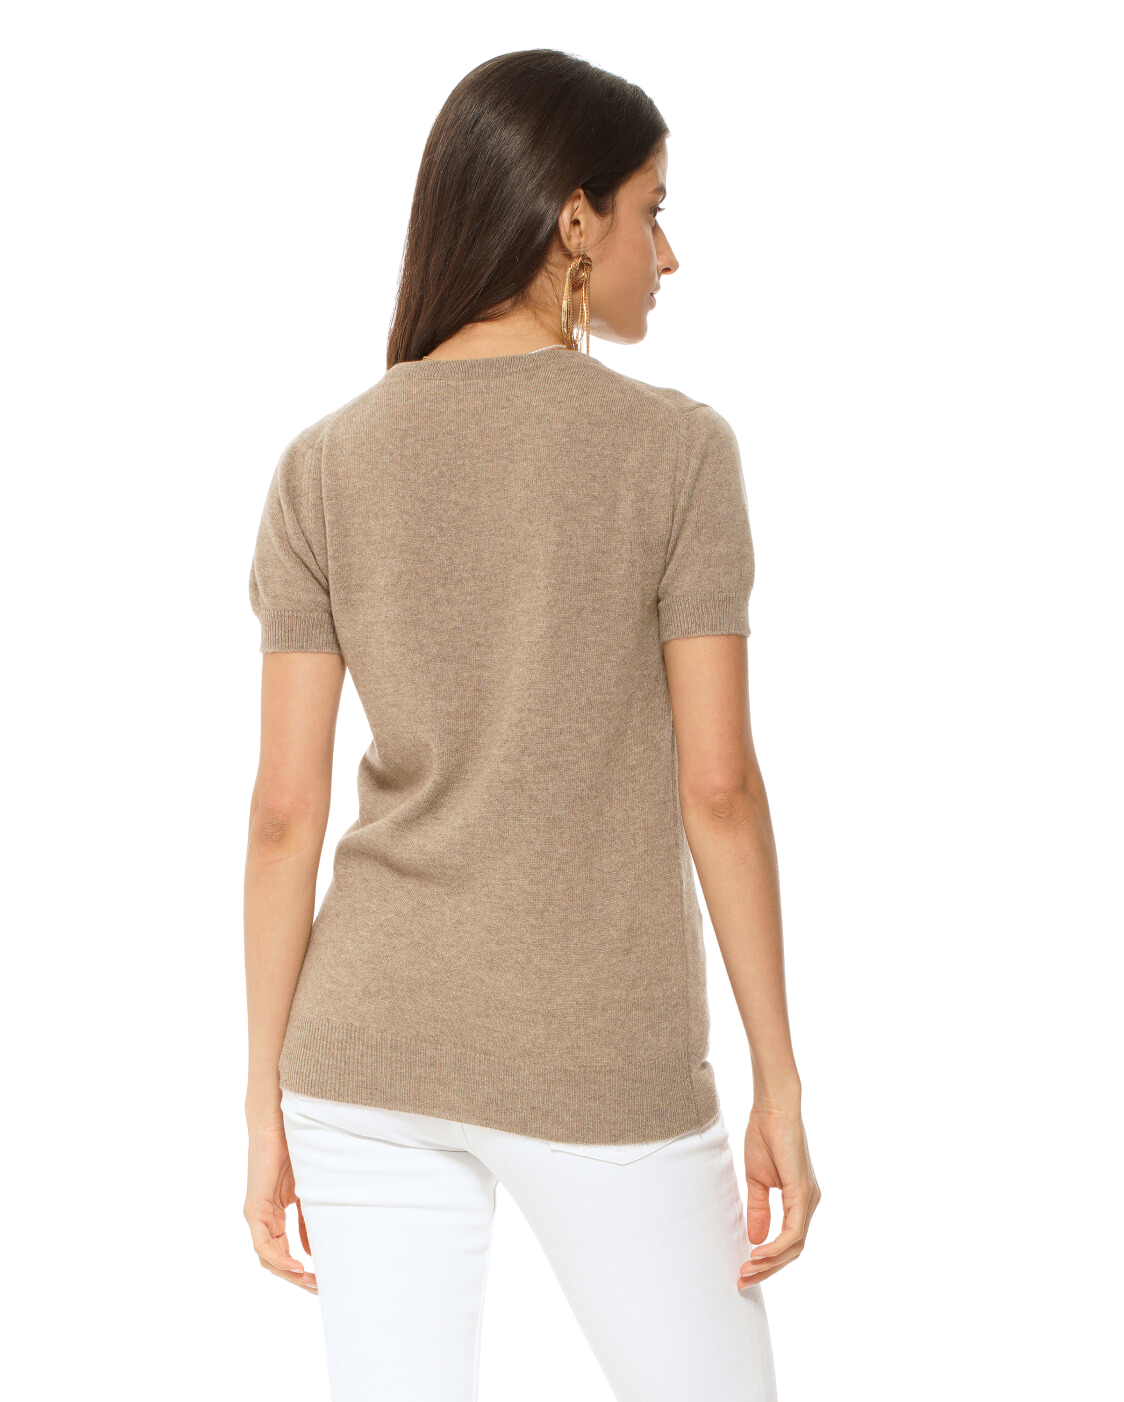 Monticelli Women's Pure Cashmere T-Shirt Camel 3